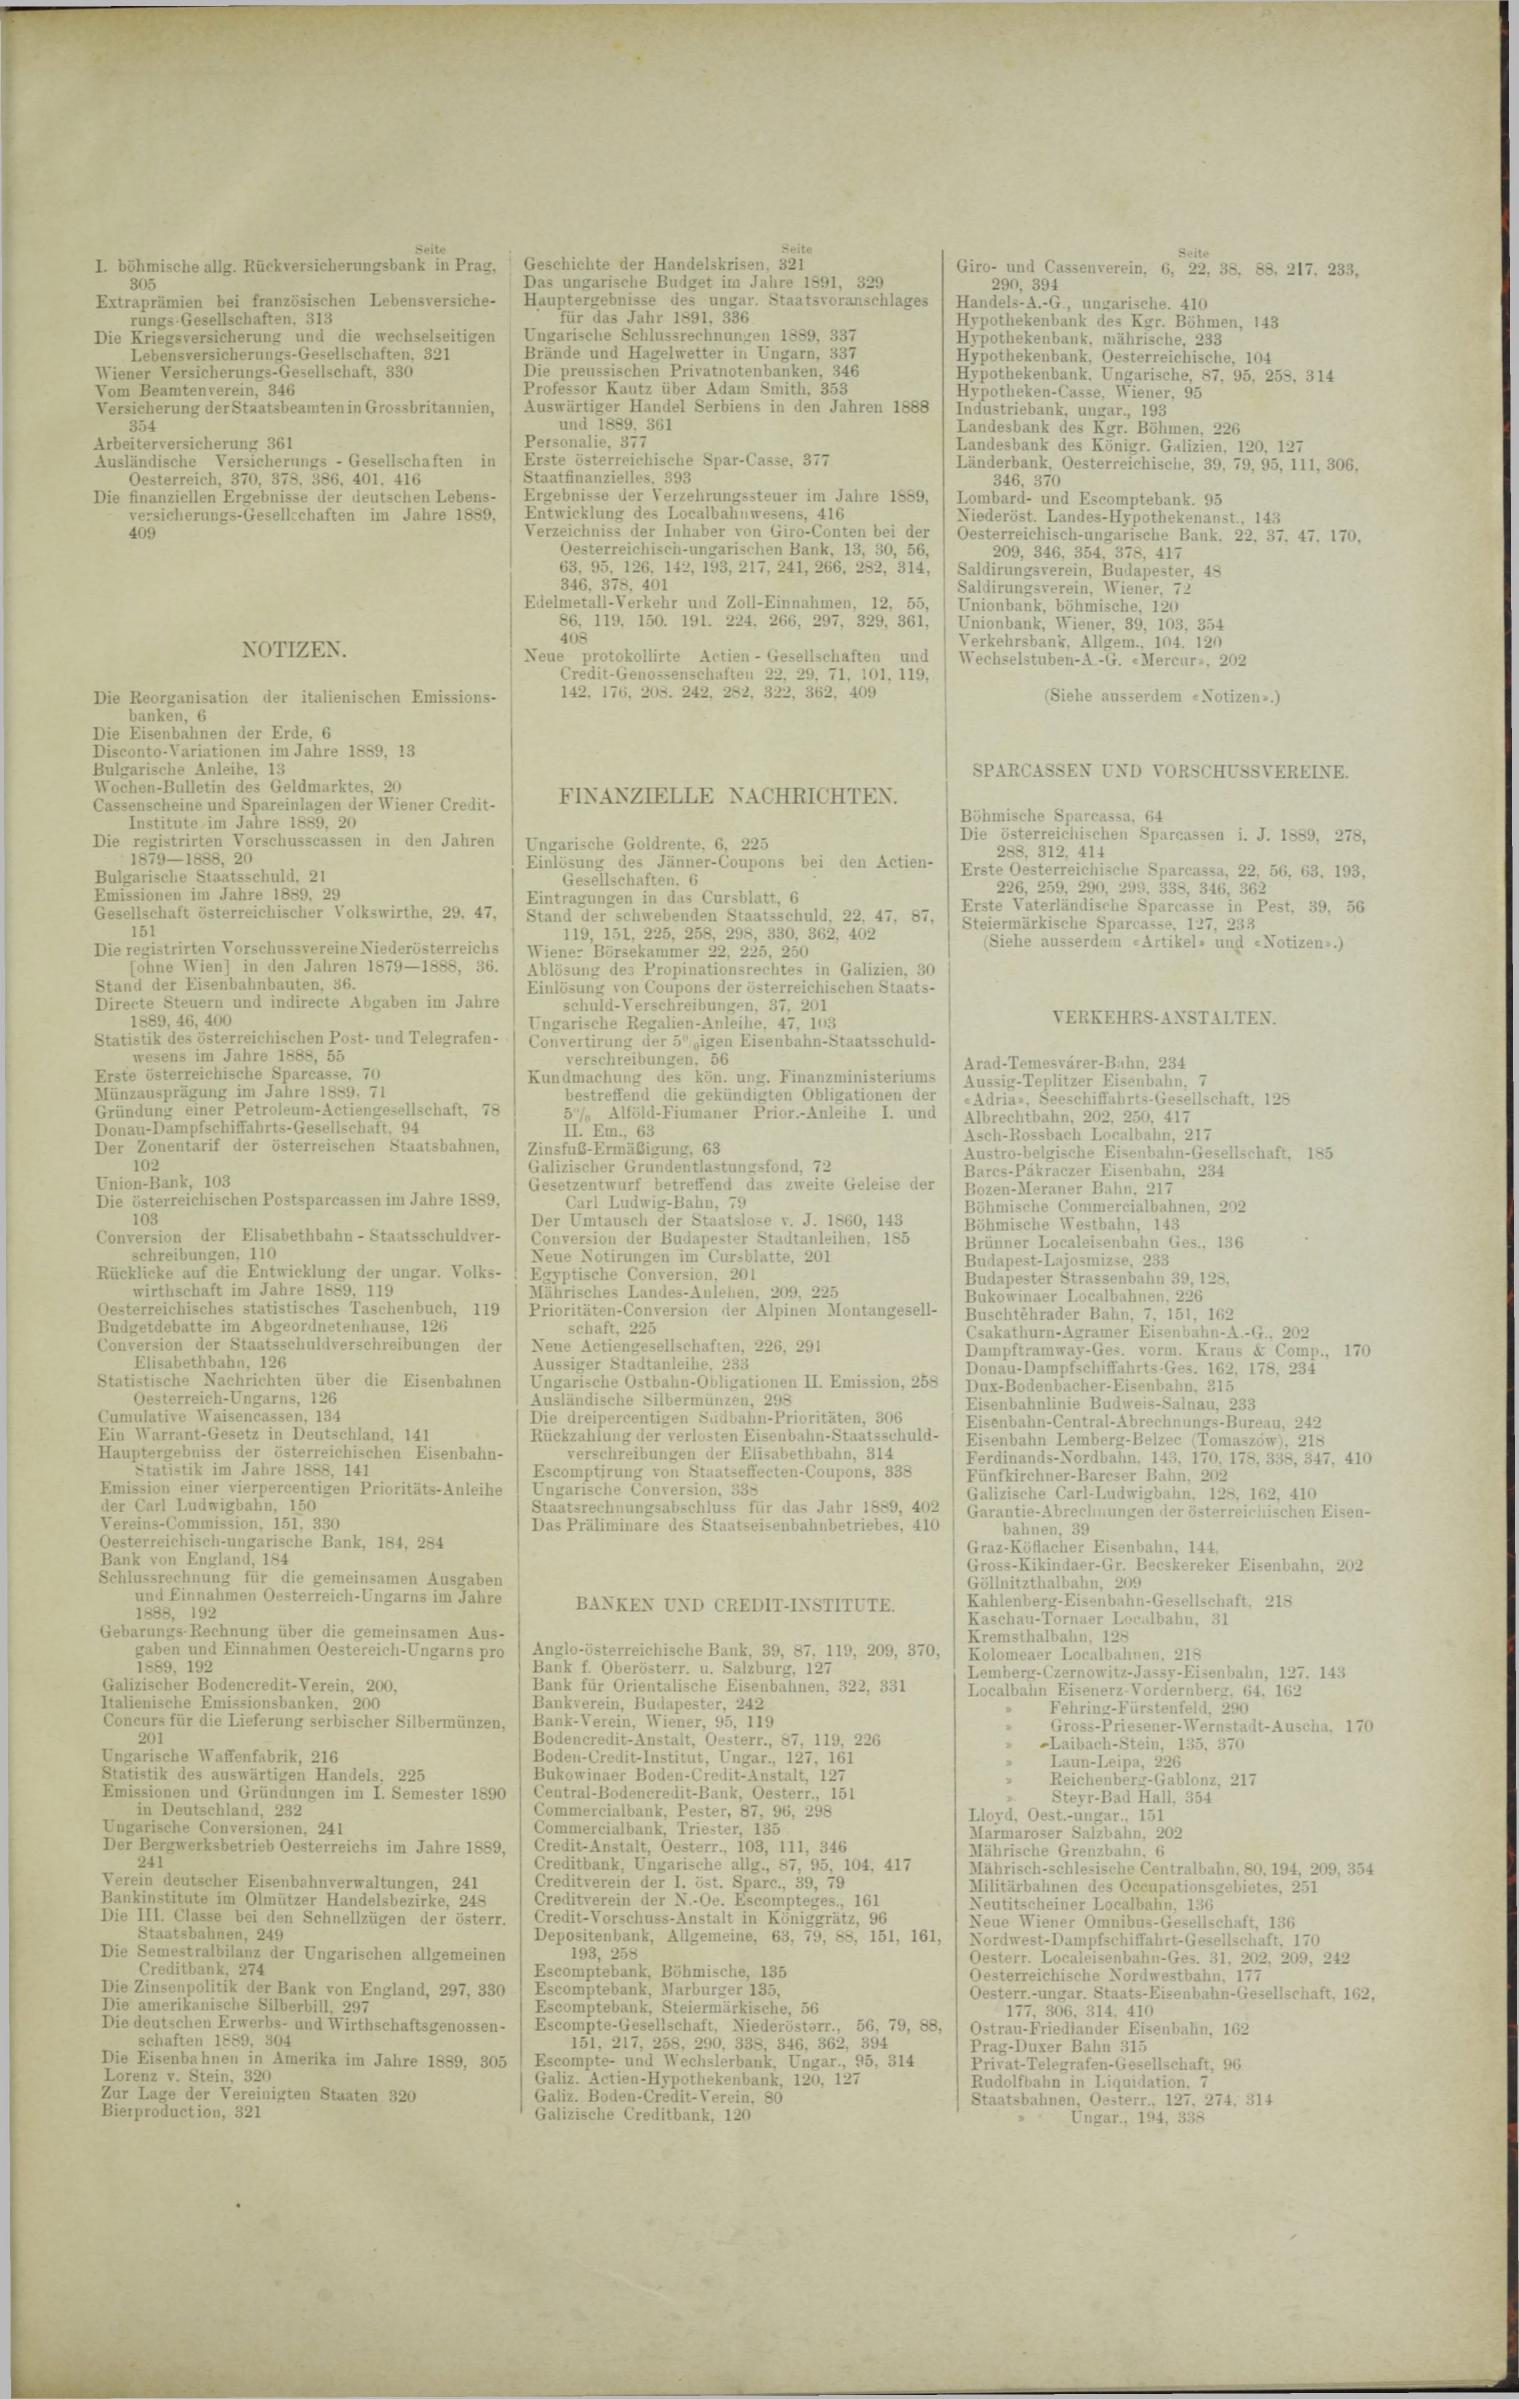 Der Tresor 09.01.1890 - Seite 11